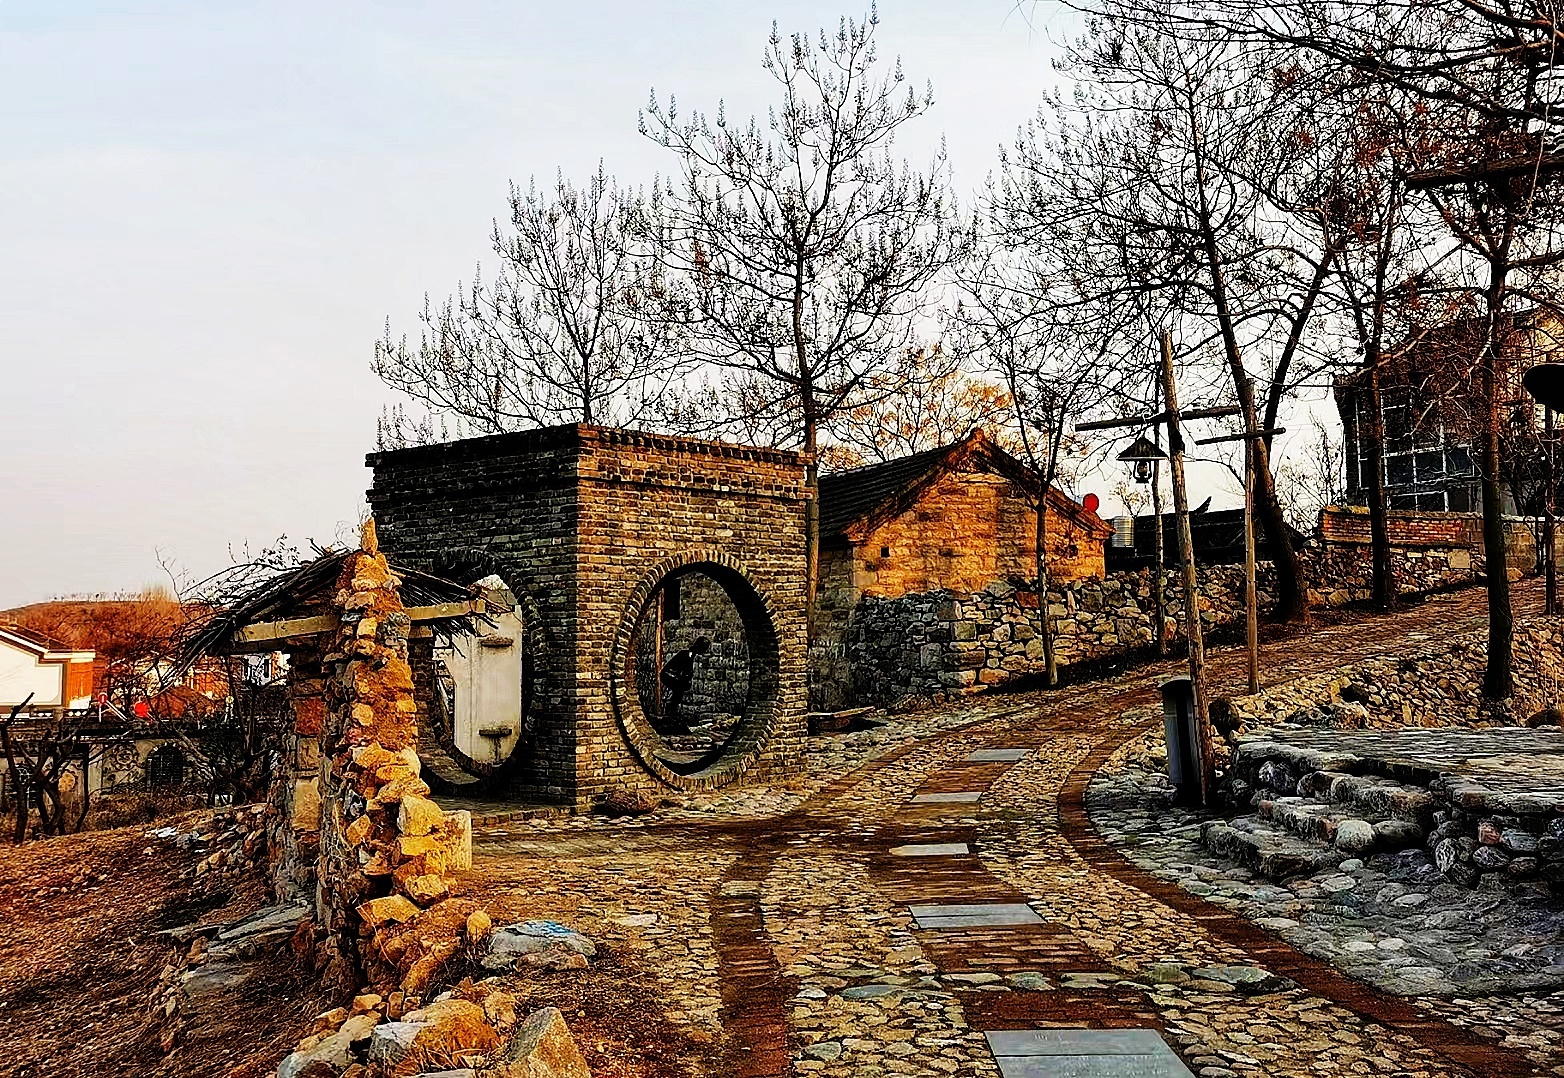 徐州的石头部落利国镇的西李村是建在山坡上的一个村庄